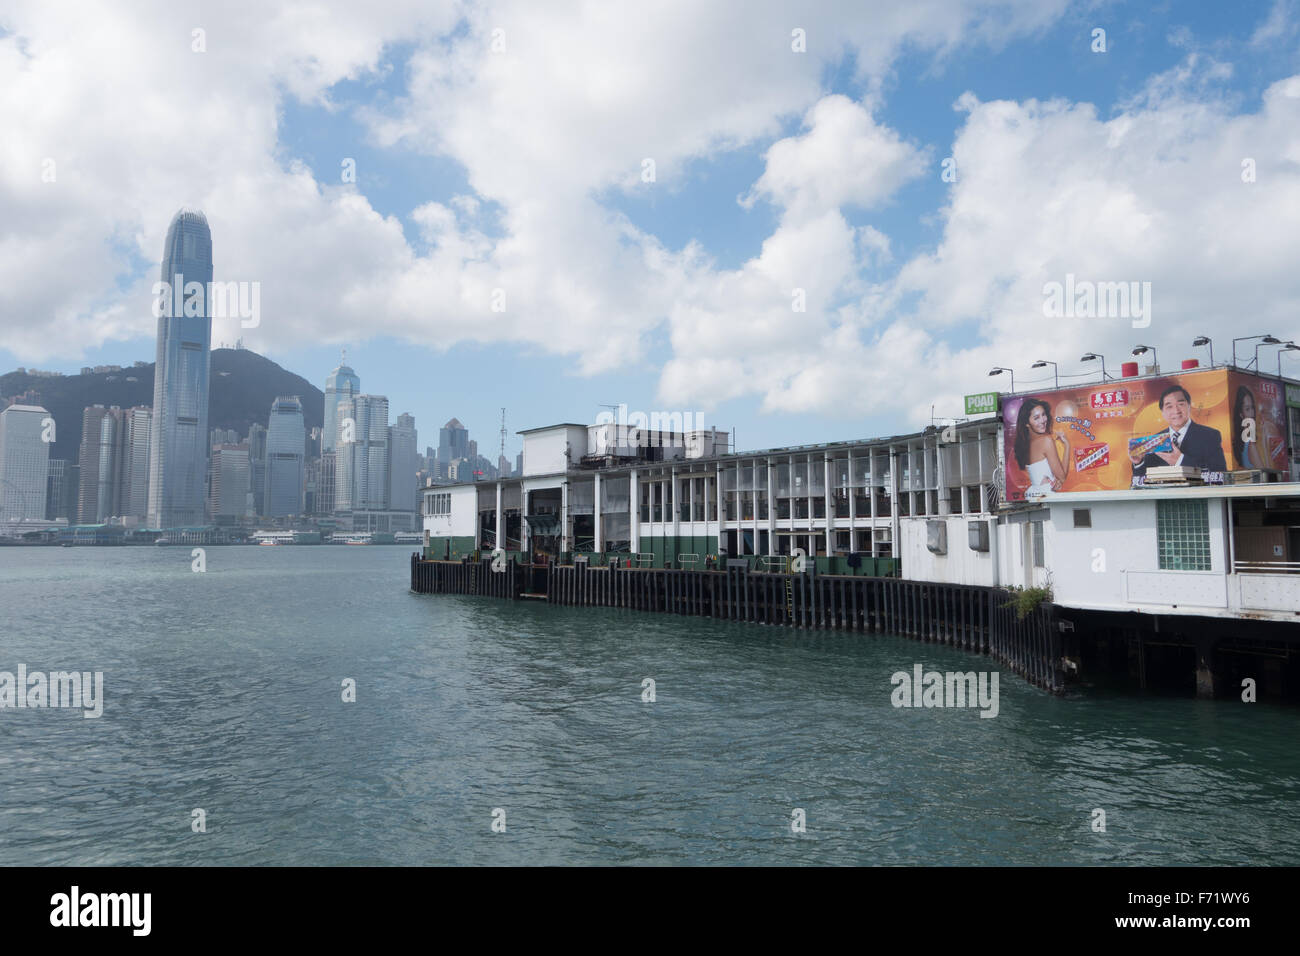 hong kong star ferry pier Stock Photo